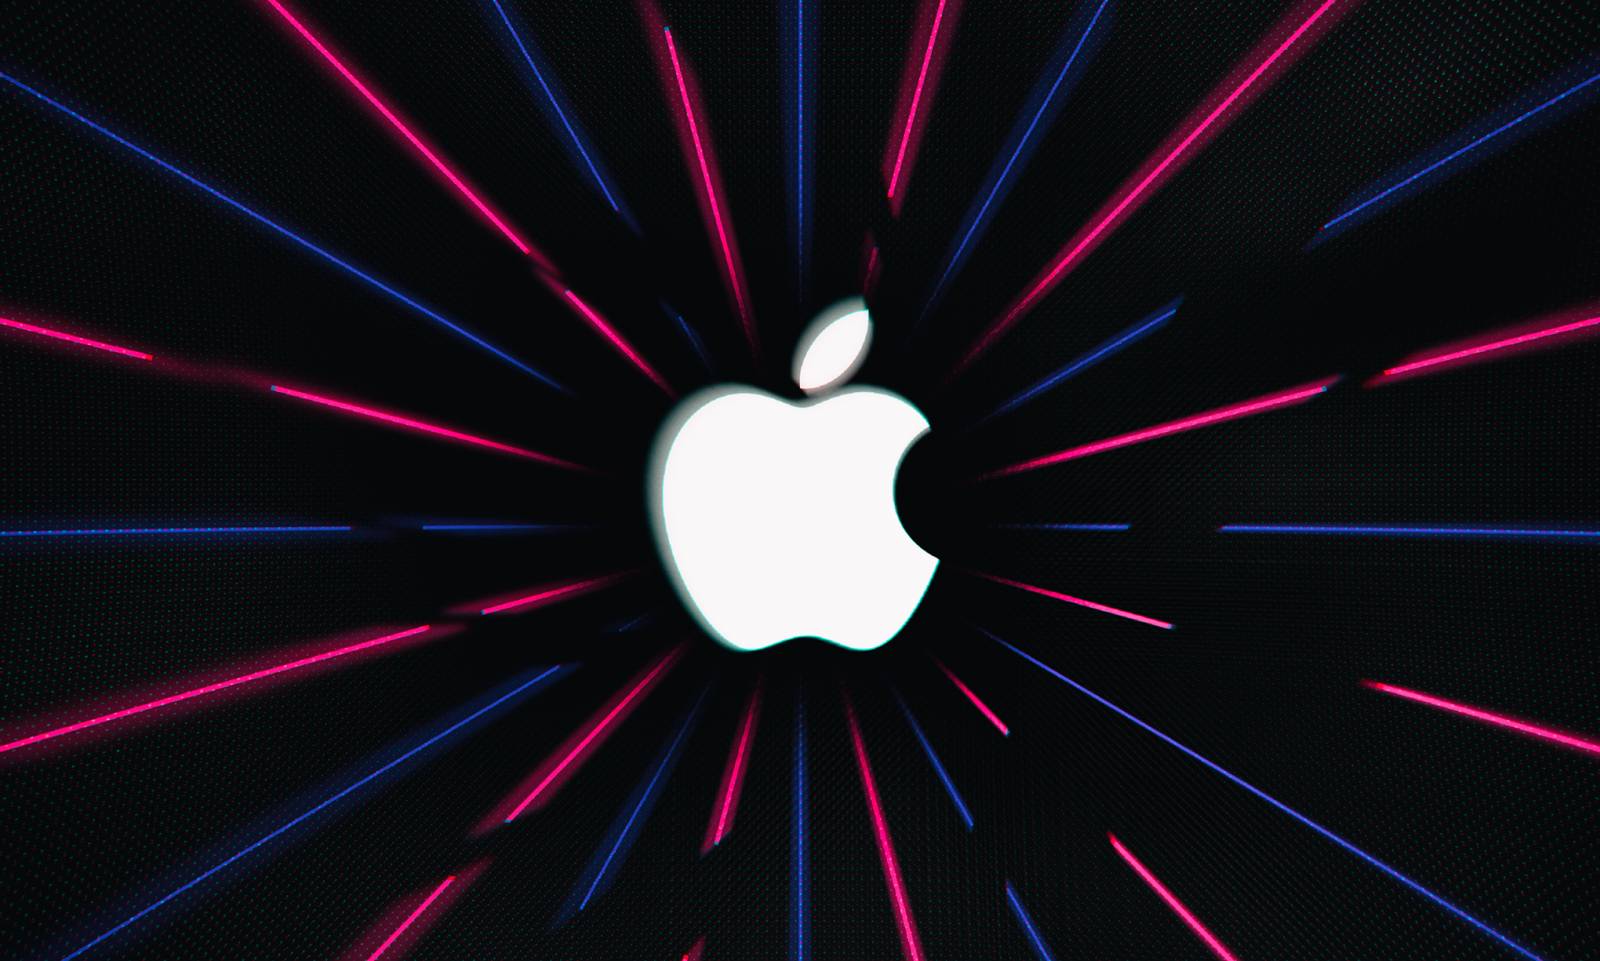 Schwerwiegendes Apple-Problem im iPhone, iPad und Mac entdeckt